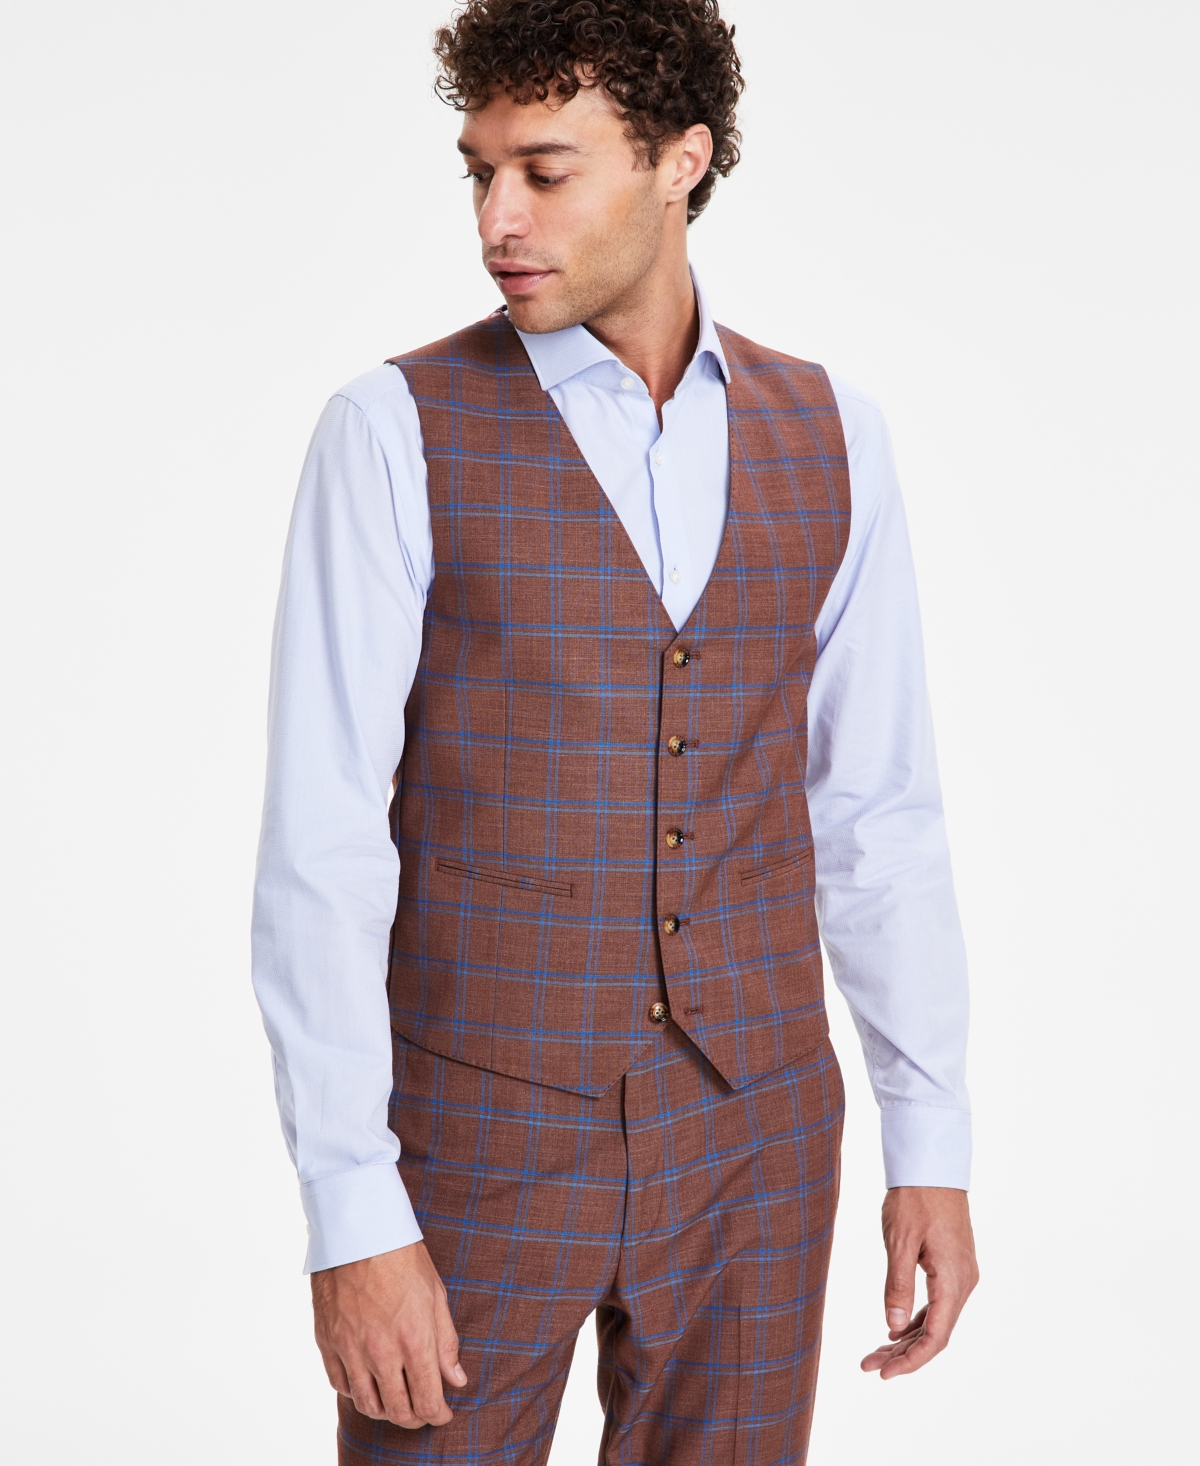 Men's Classic Fit Plaid Suit Vest - Rust/blue Plaid